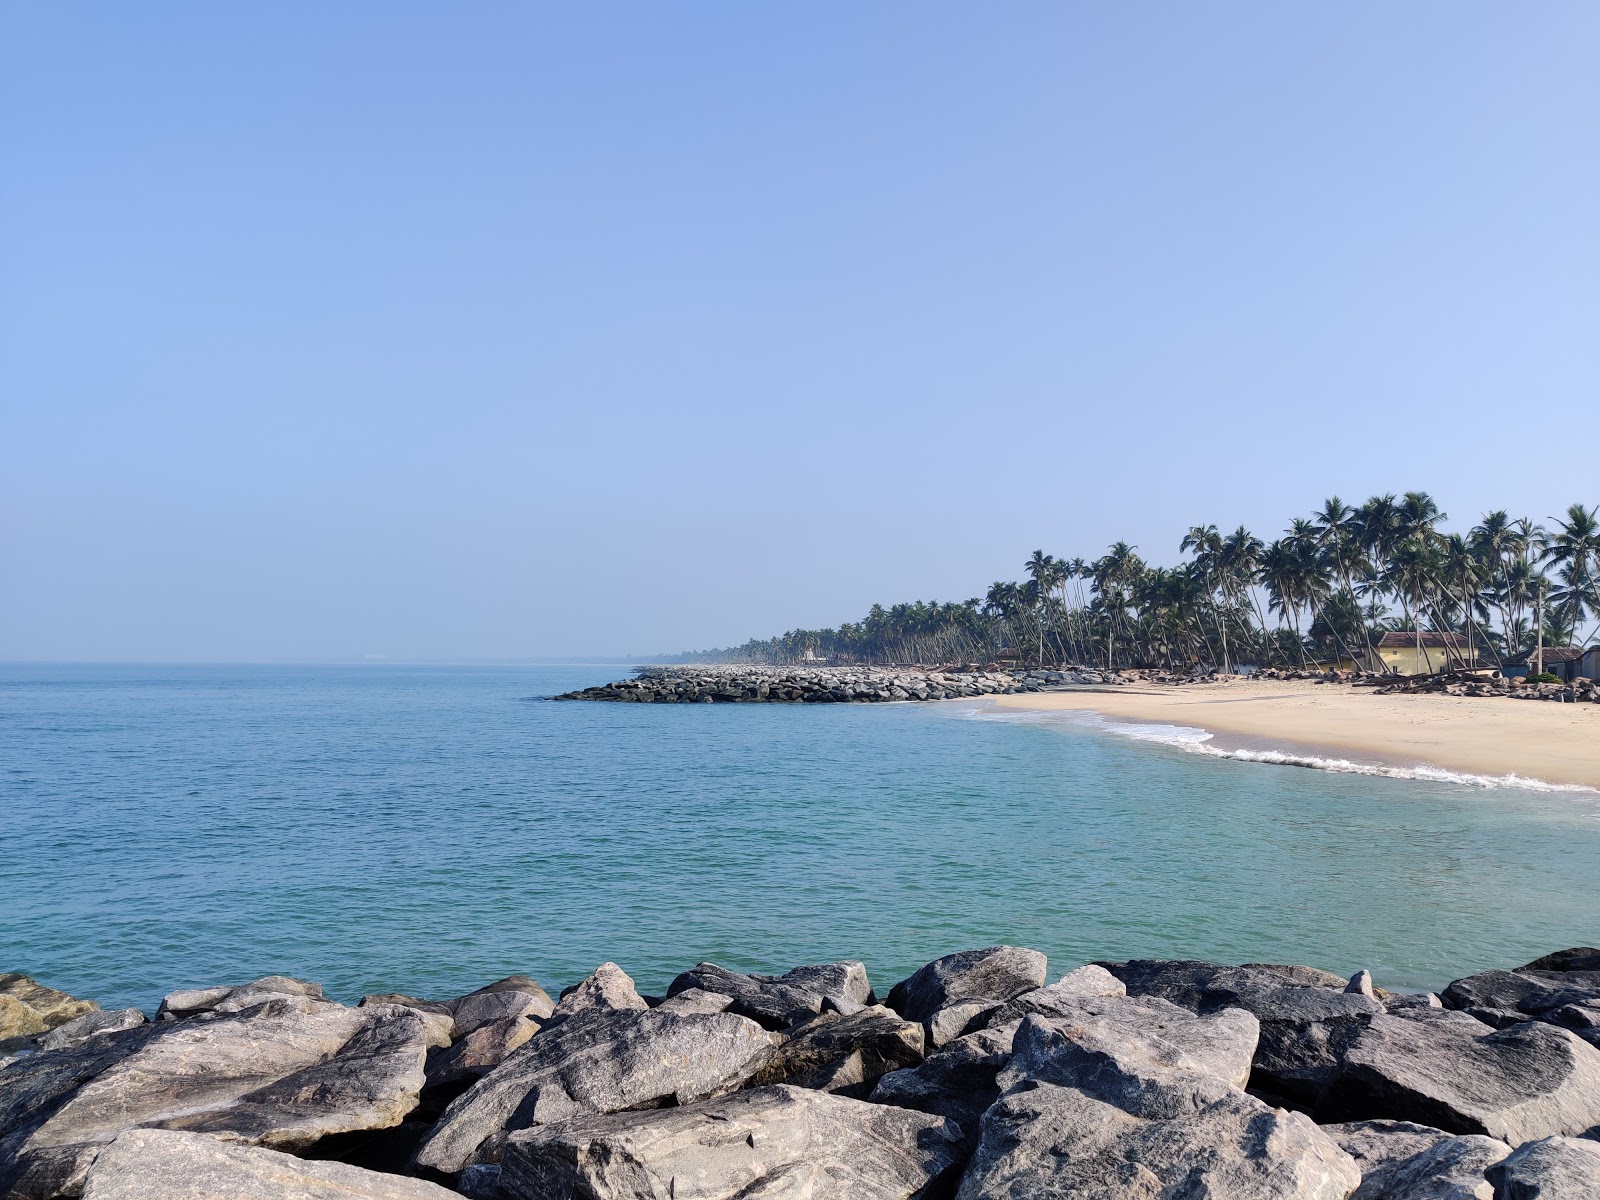 Photo de Pithrody Udyavar Beach - endroit populaire parmi les connaisseurs de la détente